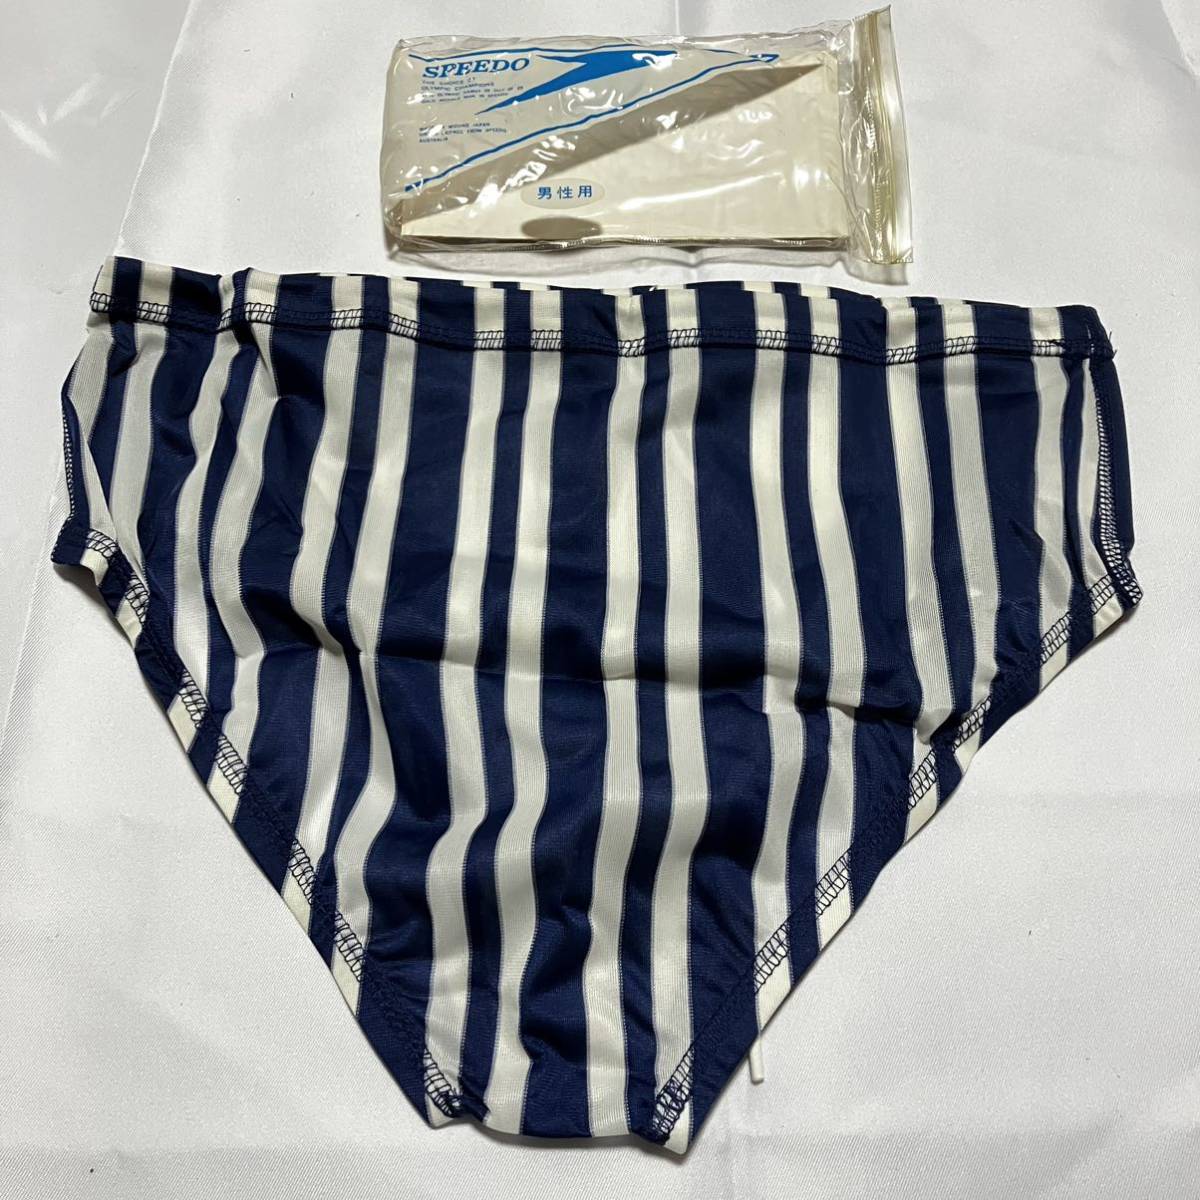 MIZUNO SPEEDO.. купальный костюм KSM-0714 M размер темно-синий × белый старый Logo Vintage подлинная вещь Япония стандартный товар . хлеб Mizuno скорость 